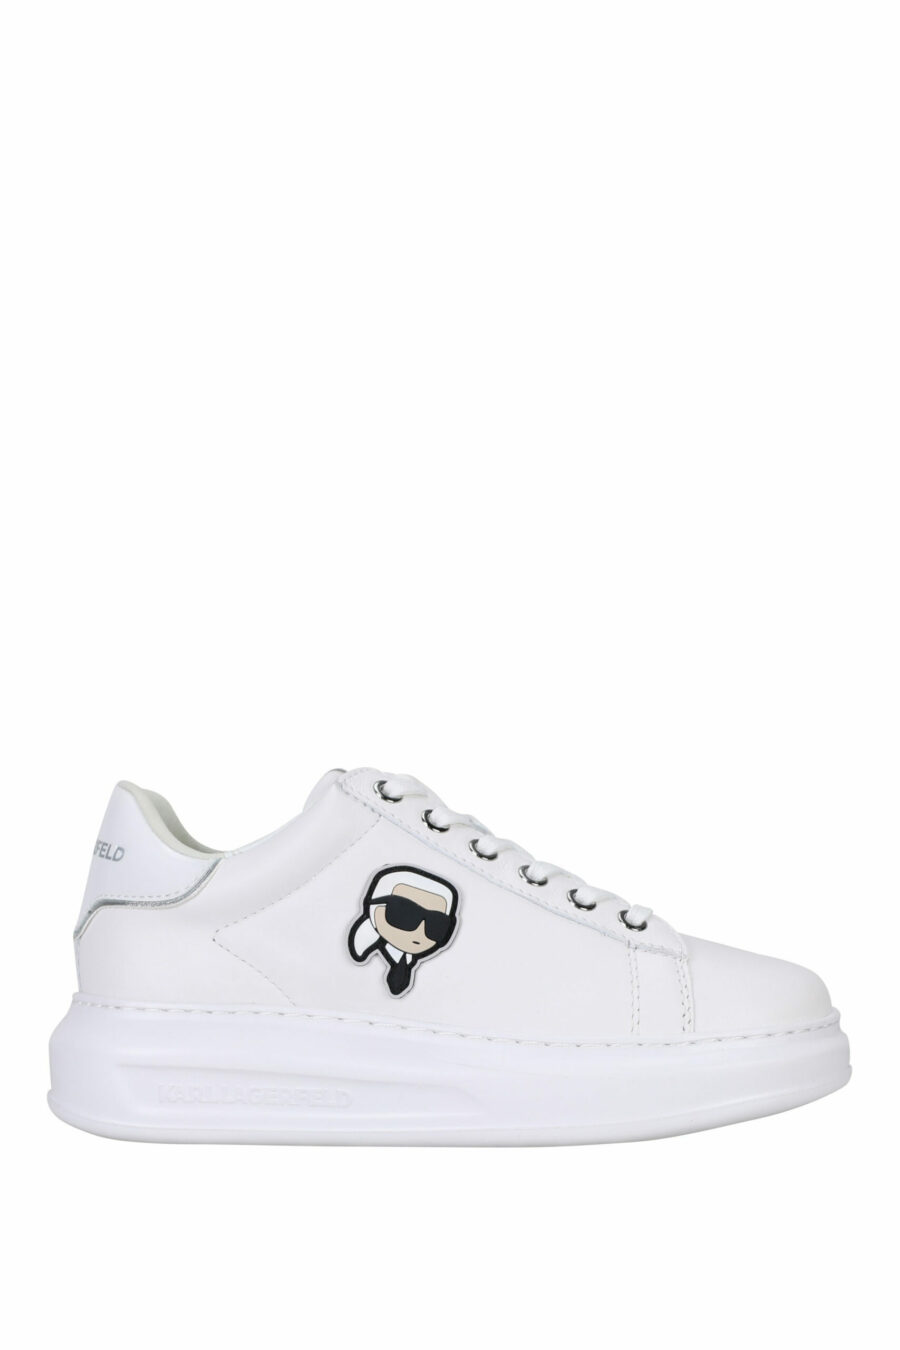 Zapatillas blancas "Kapri" con logo en goma y detalle blanco - 5059529351211 scaled